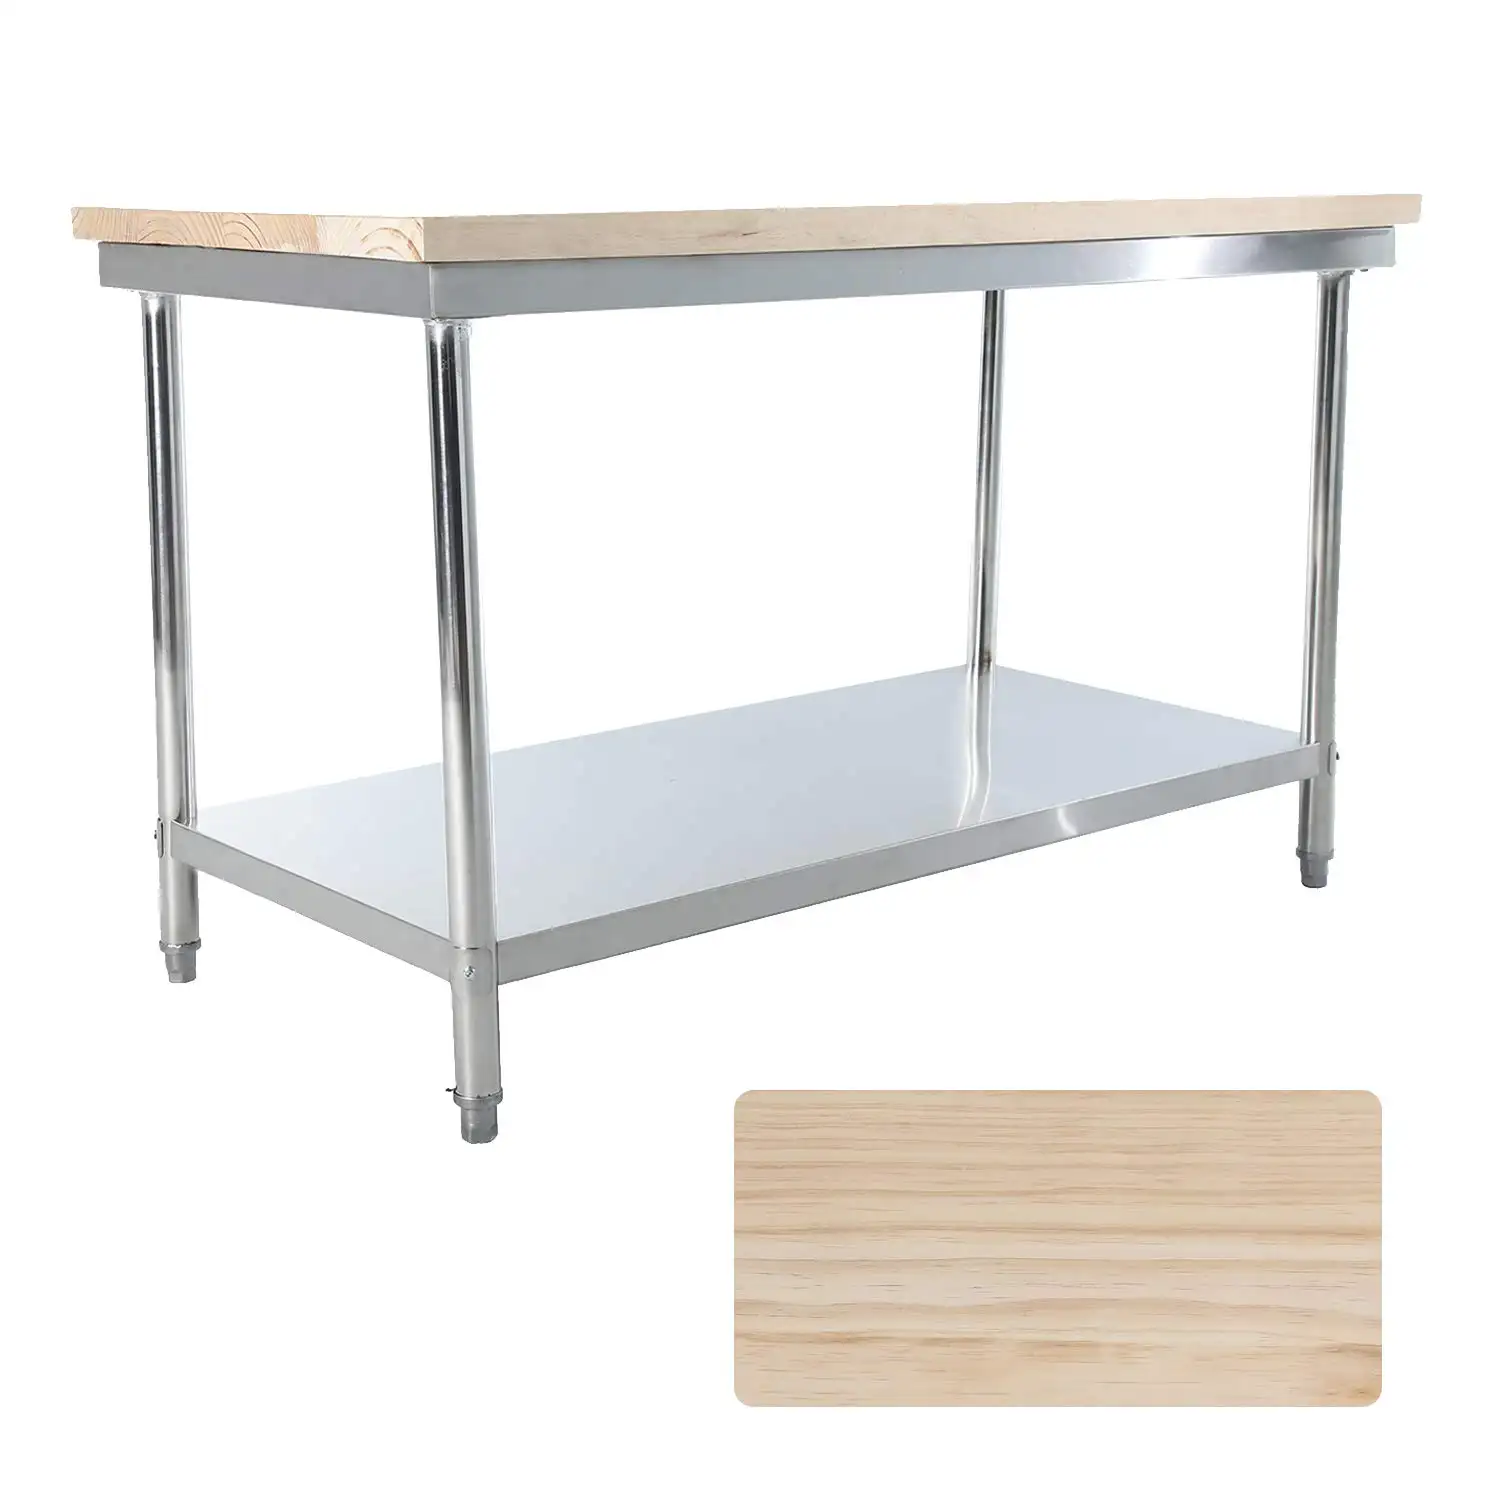 Équipement de cuisine commerciale Table rectangulaire Table de restauration en acier inoxydable Table de travail de restaurant pour dessus en bois